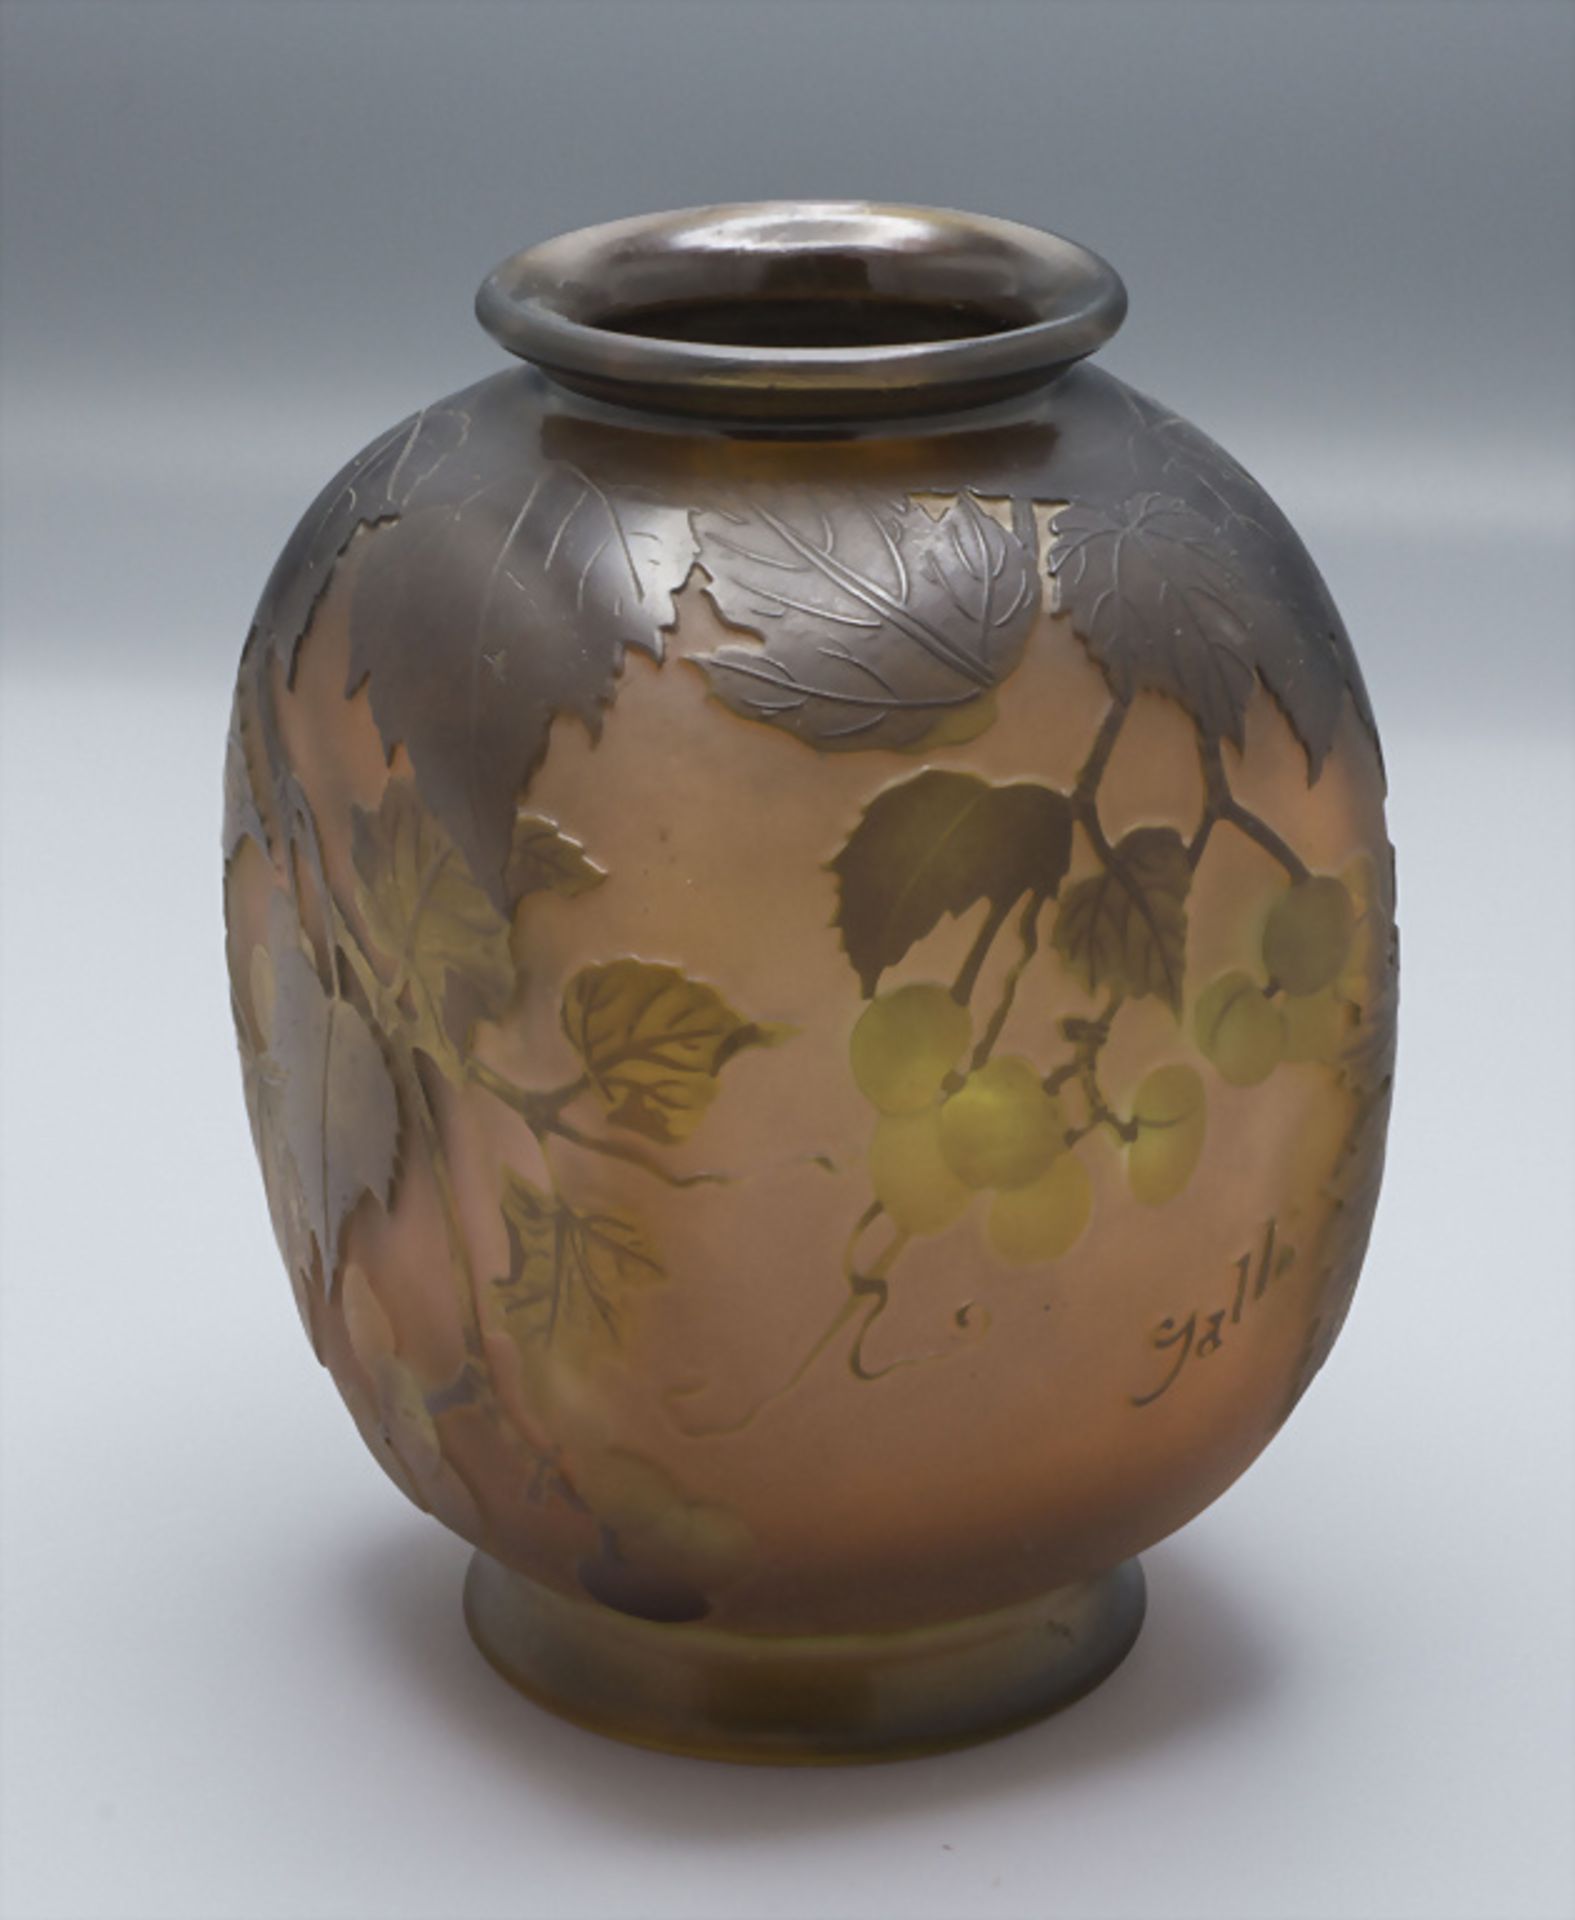 Jugendstil Vierkantvase mit Weinranken / An Art Nouveau square cameo glass vase with vine ...